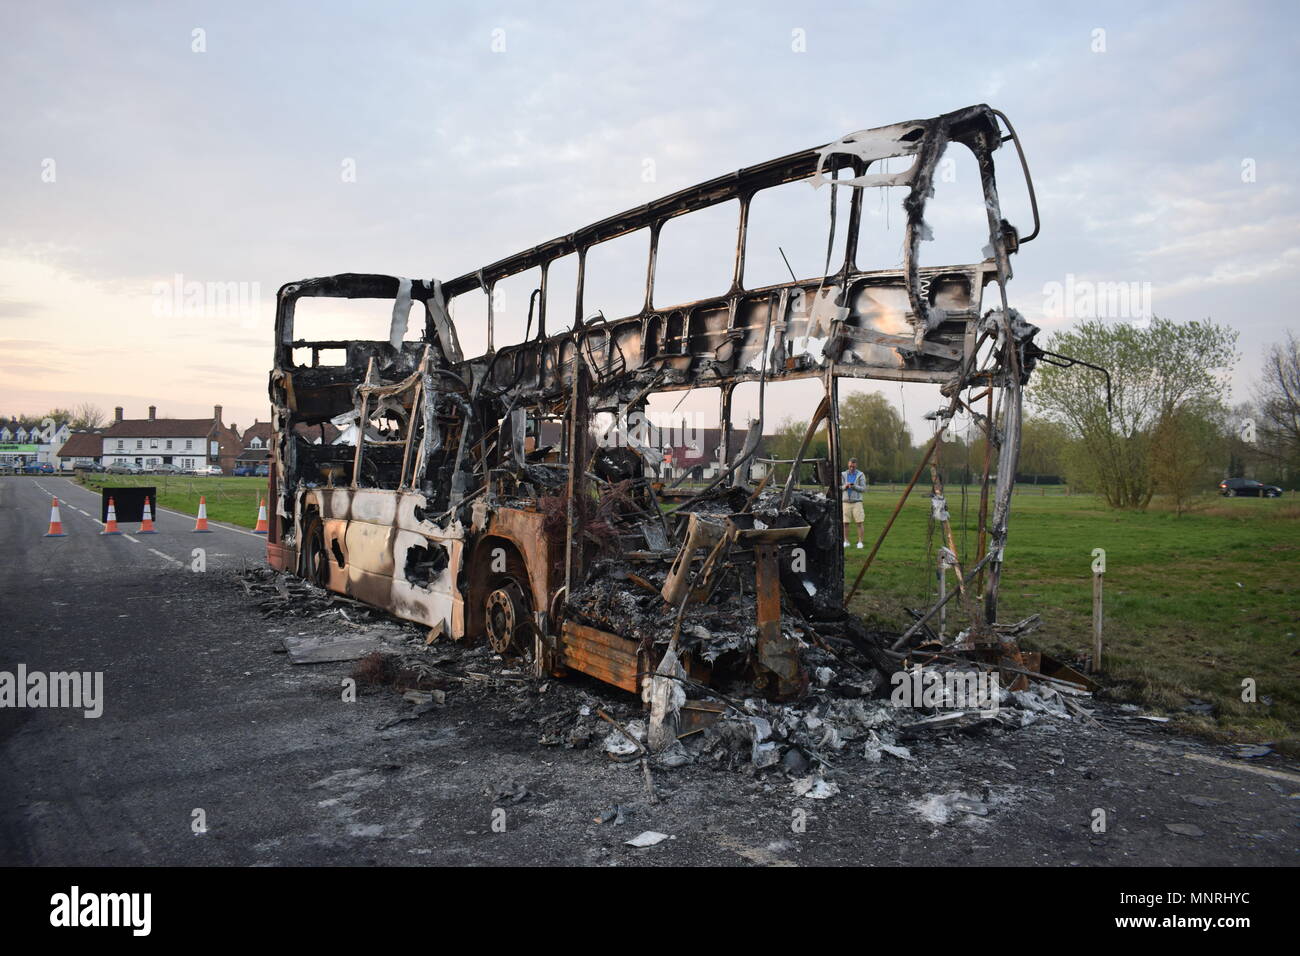 London Bus Brennt nach Unten Stockfoto